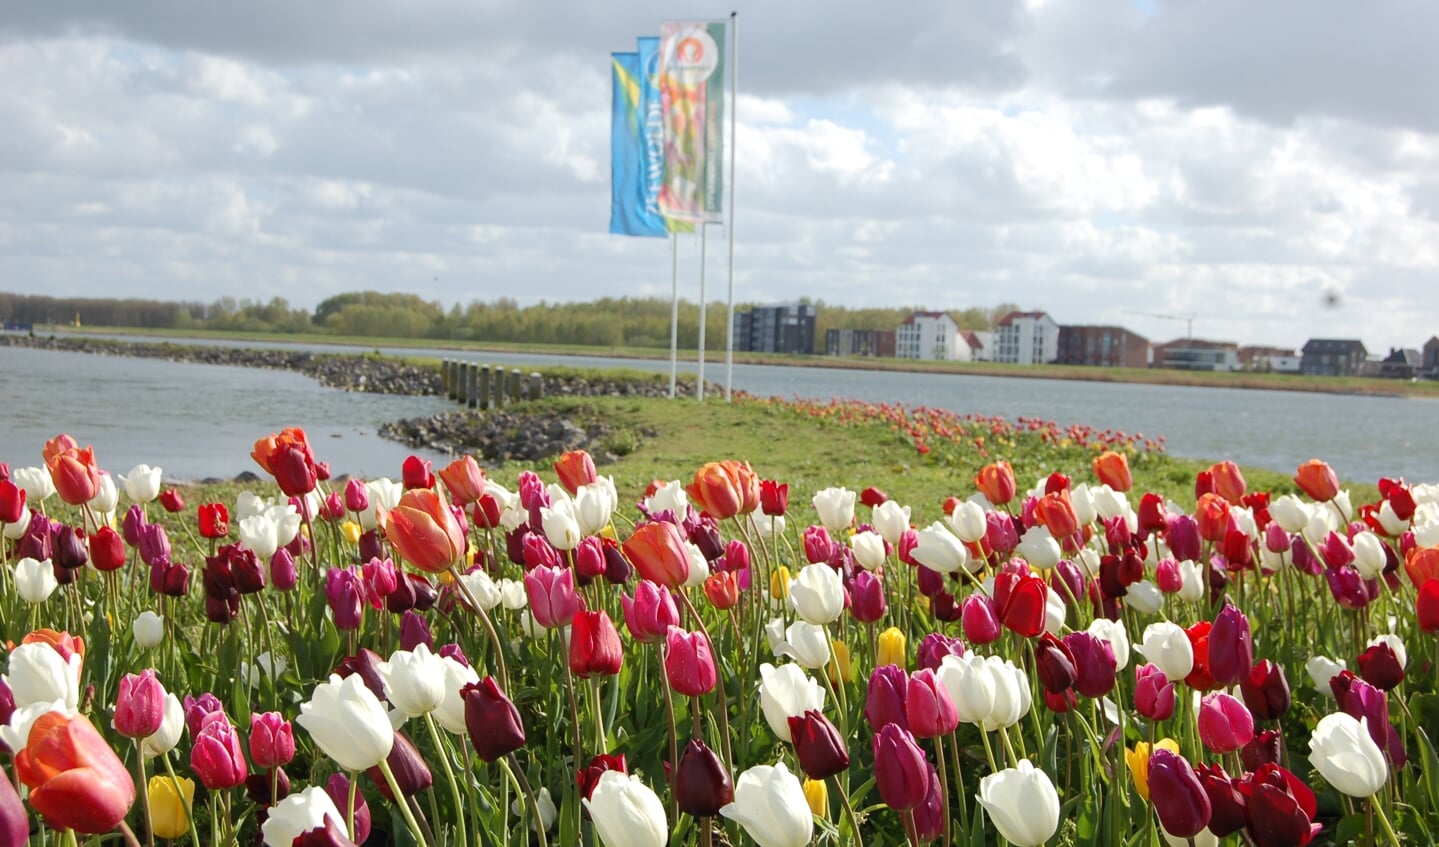 Tulpeiland Zeewolde, onderdeel van de tulpenroute (2022)